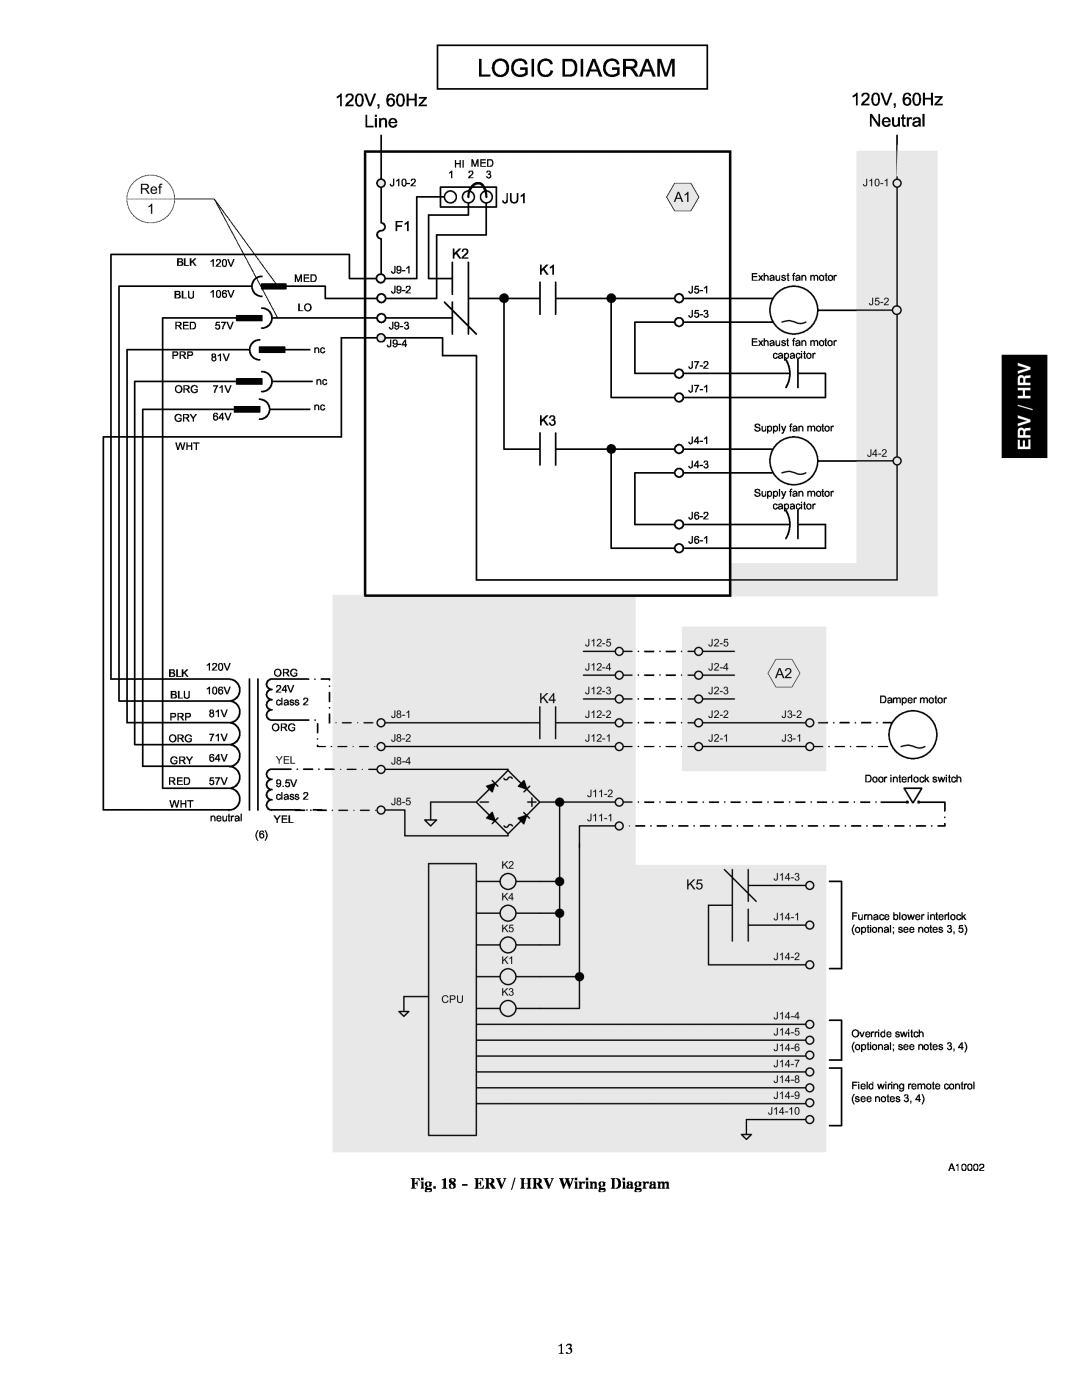 Carrier ERVCCSHB1100, HRVCCSVB1100 ERV / HRV Wiring Diagram, Logic Diagram, 120V, 60Hz, Line, Neutral, Erv / Hrv 